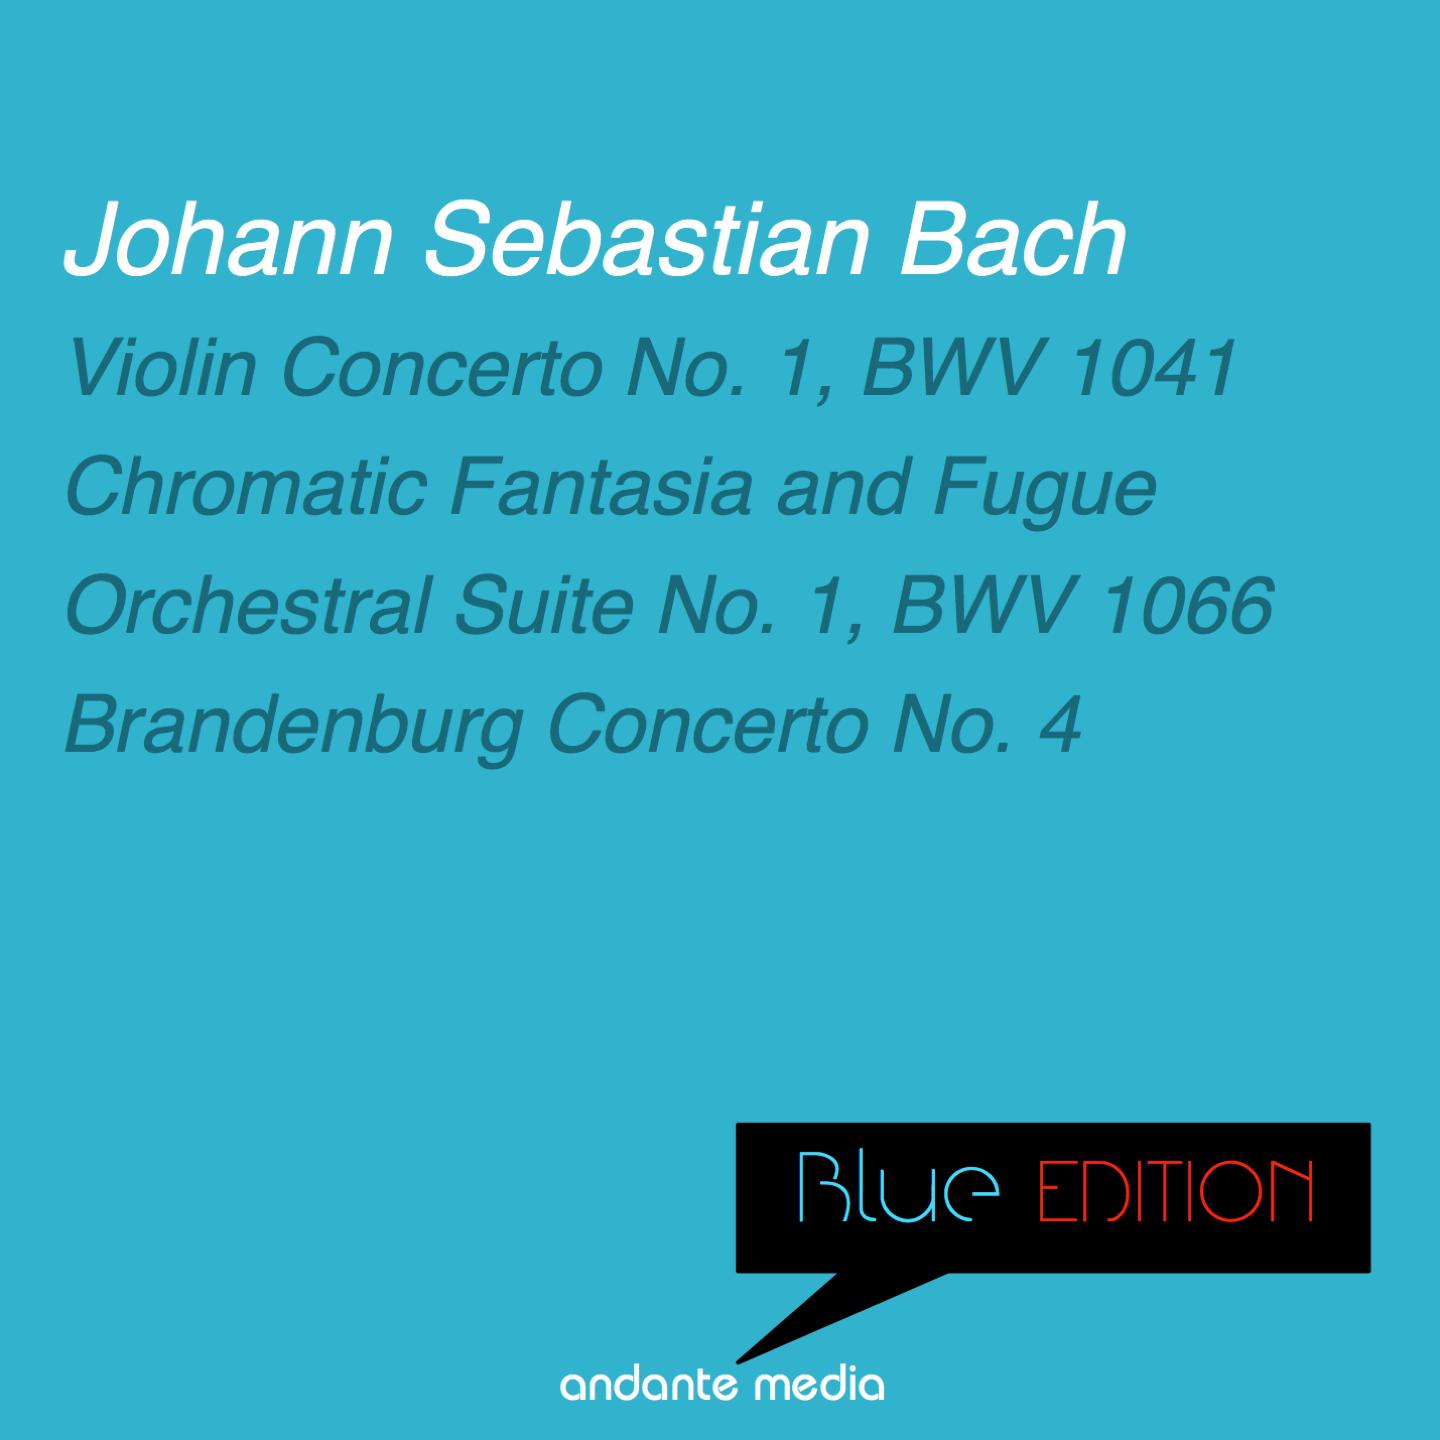 Chromatic Fantasia and Fugue in D Minor, BWV 903: III. Fuga